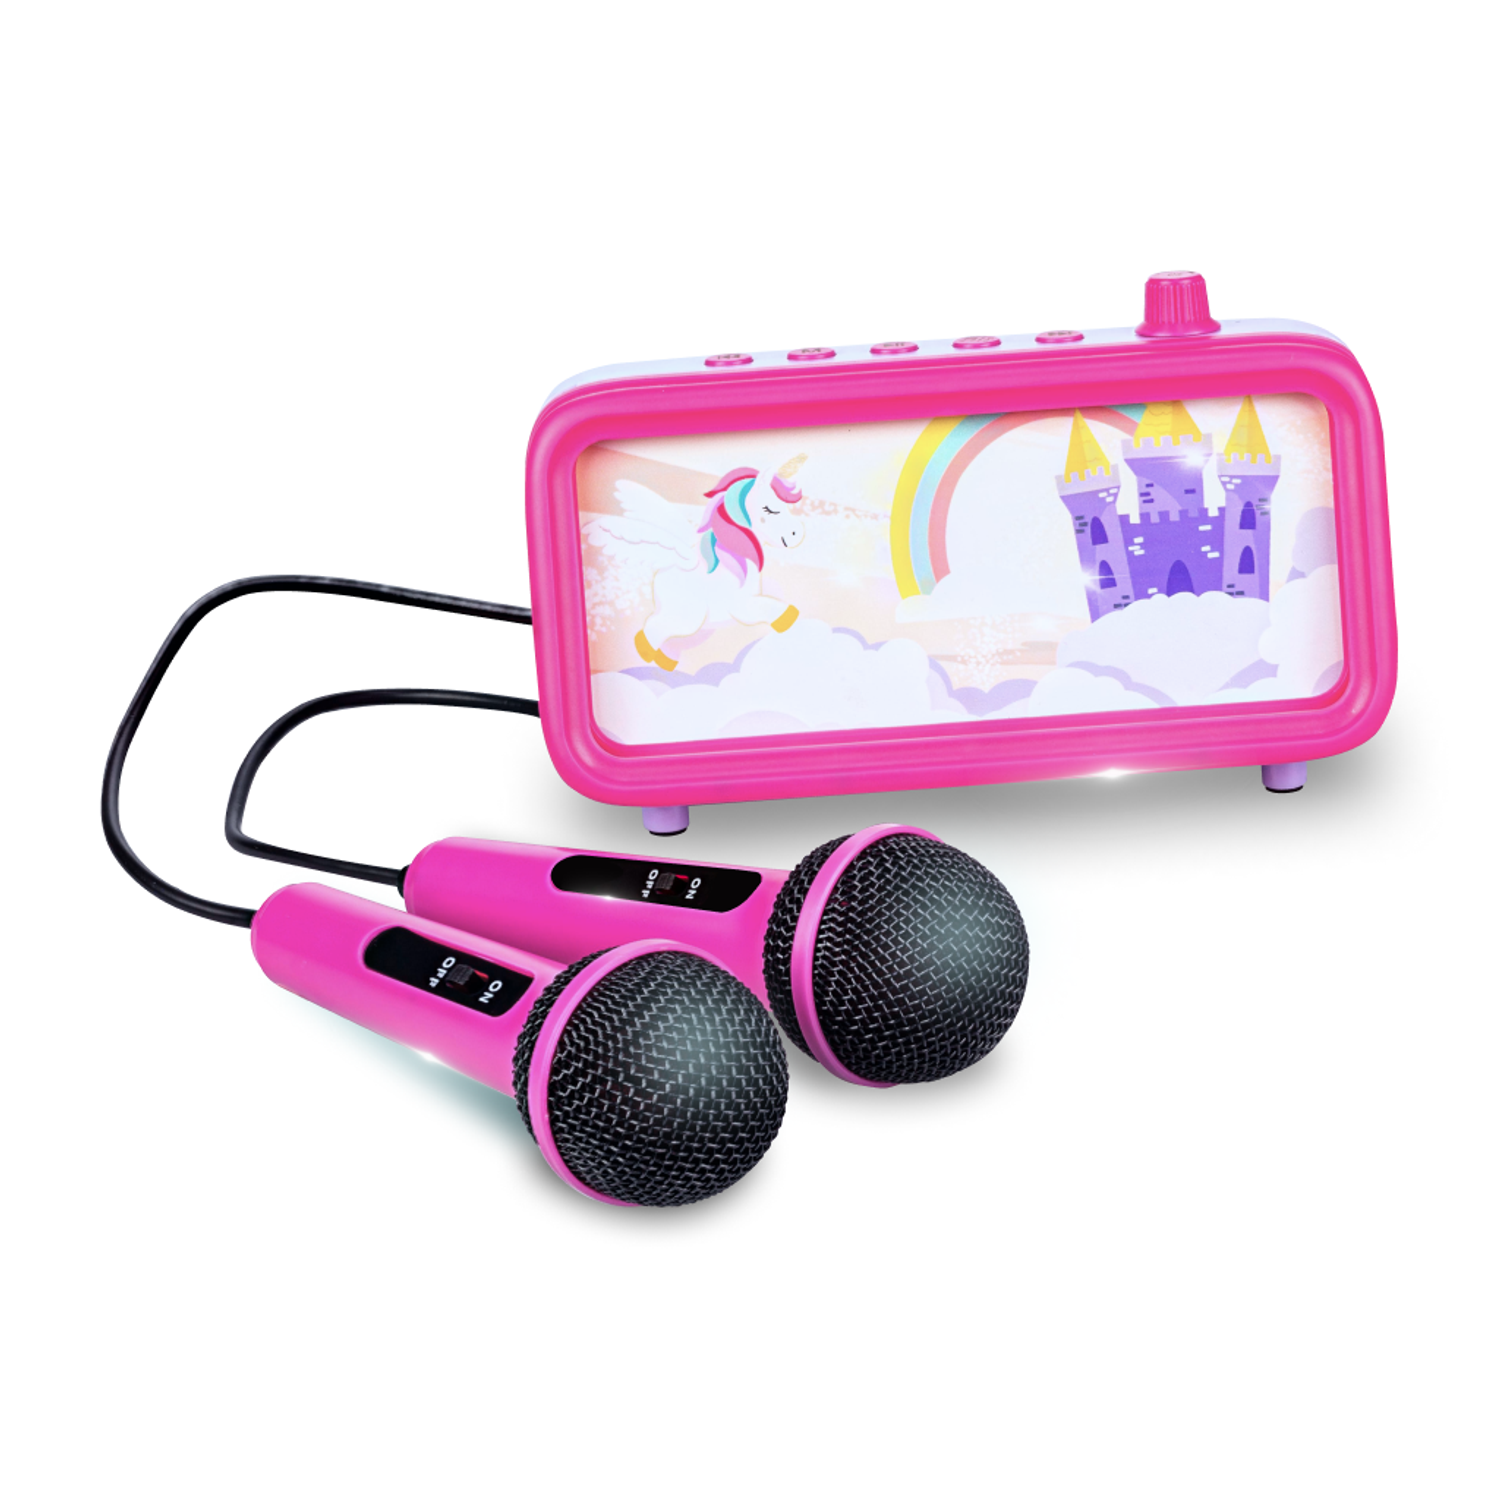 Караоке-пенал для детей Solmax с микрофоном и колонкой Bluetooth розовый - фото 7